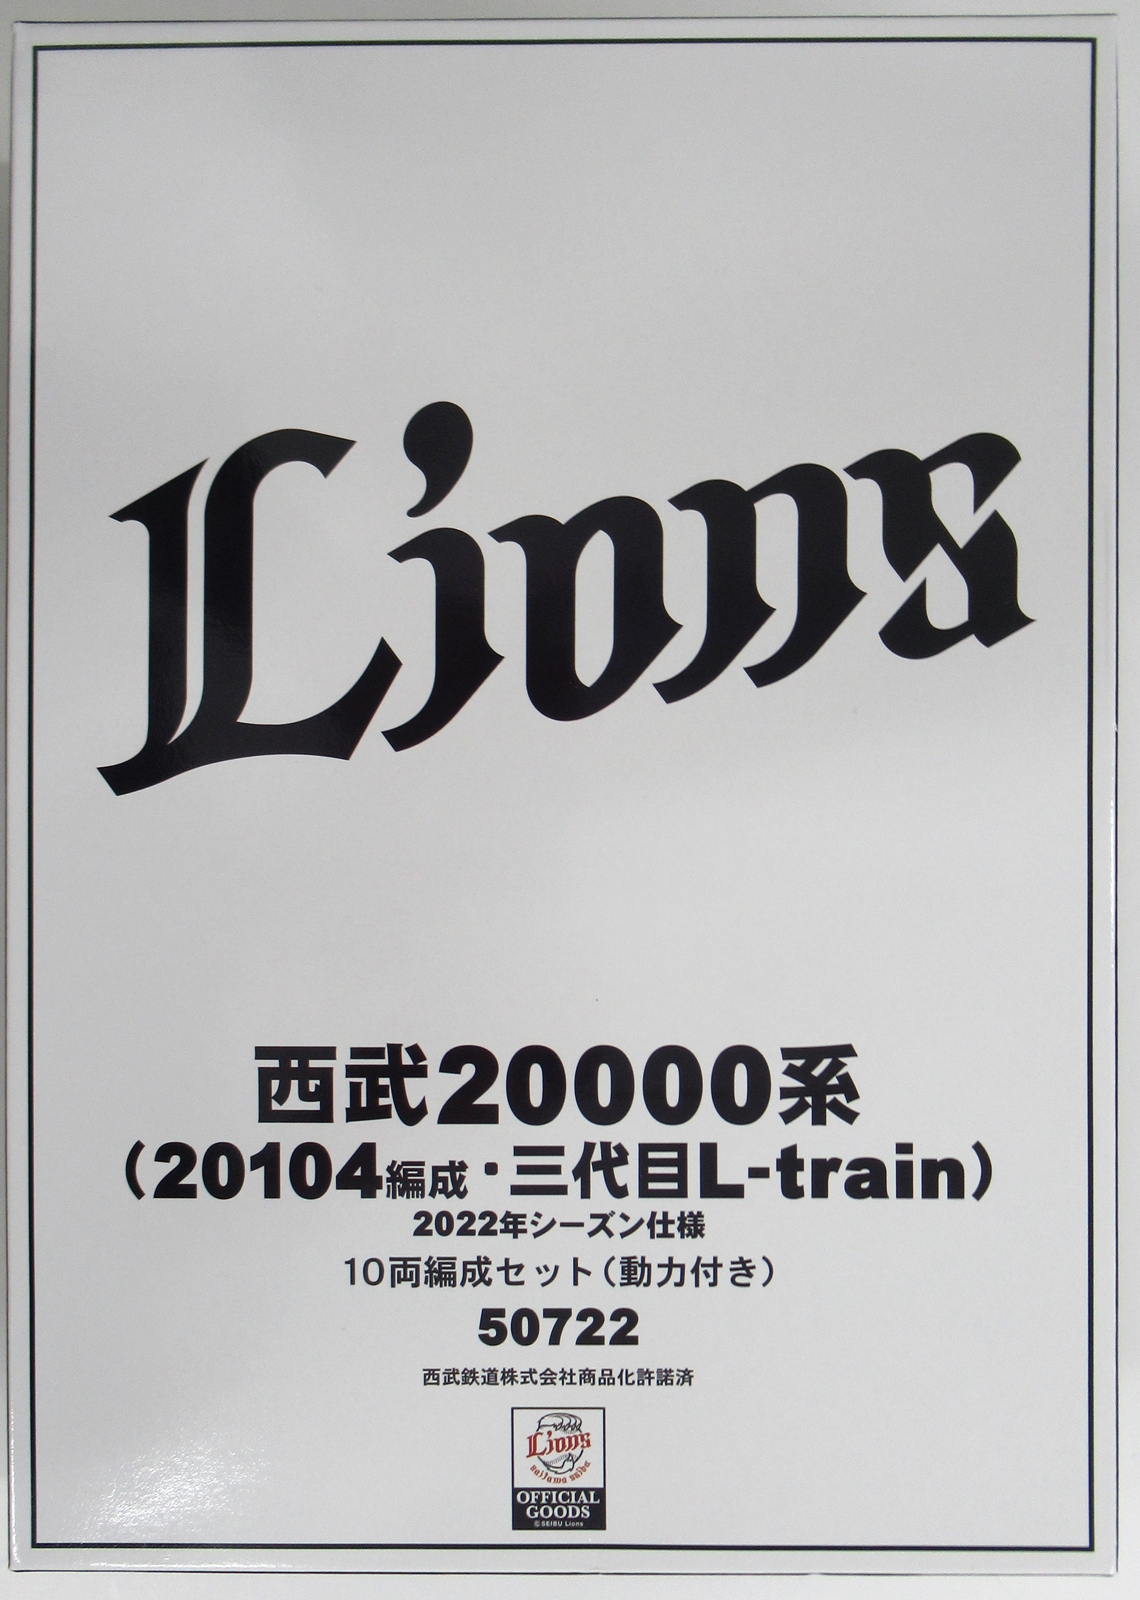 50722 西武20000系 L-train 2022年